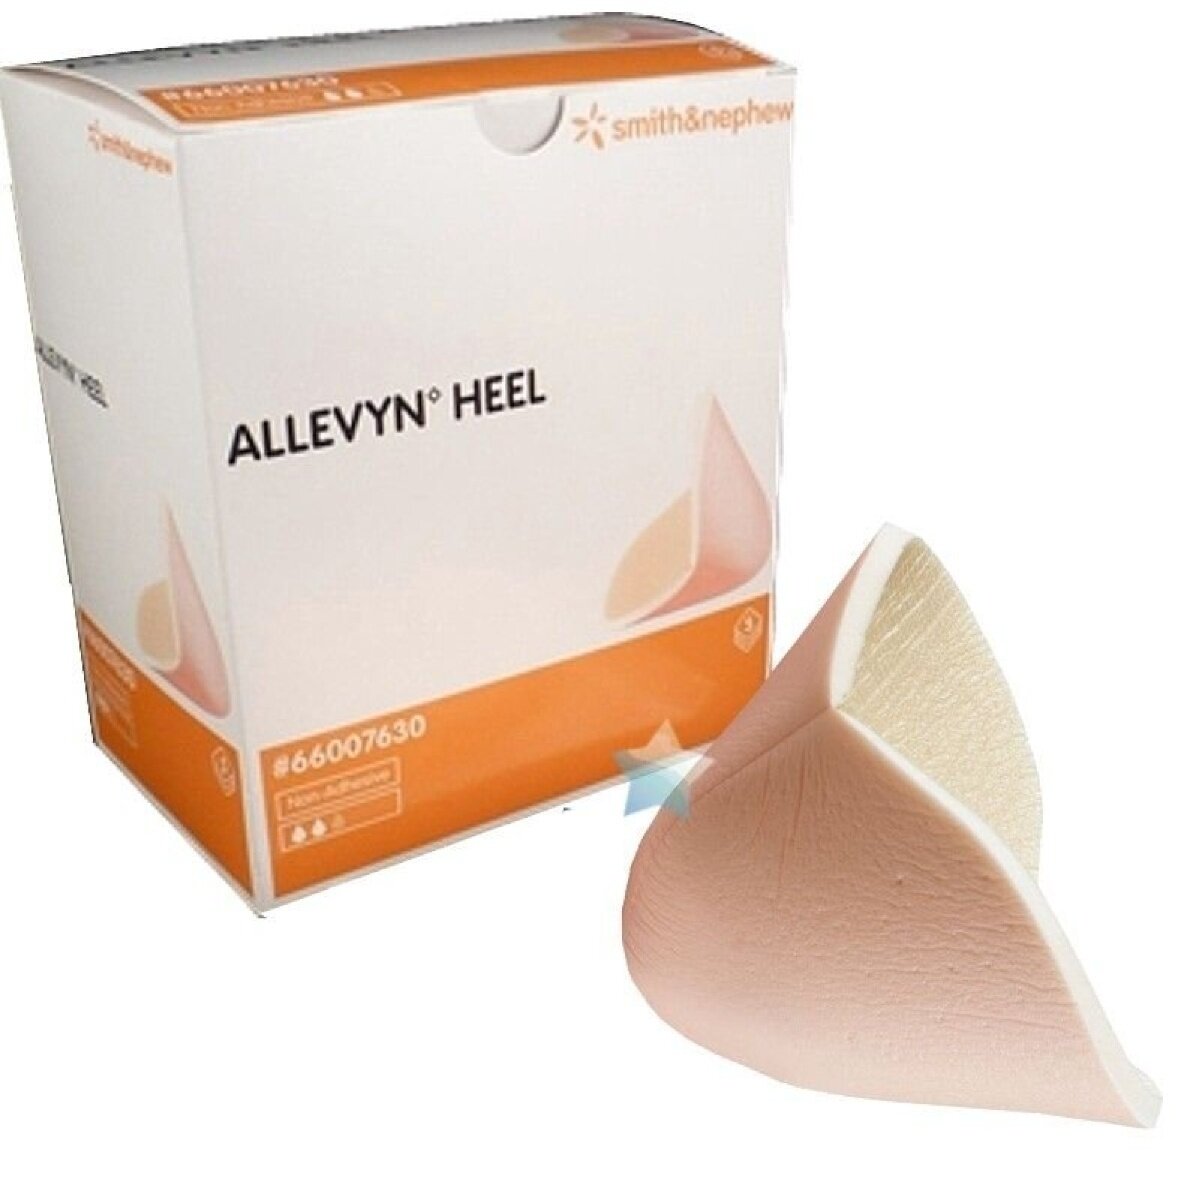 Allevyn Heel / Аллевин Хил - абсорбирующая повязка из гидропористого полиуретана для стопы и кисти 1 повязка